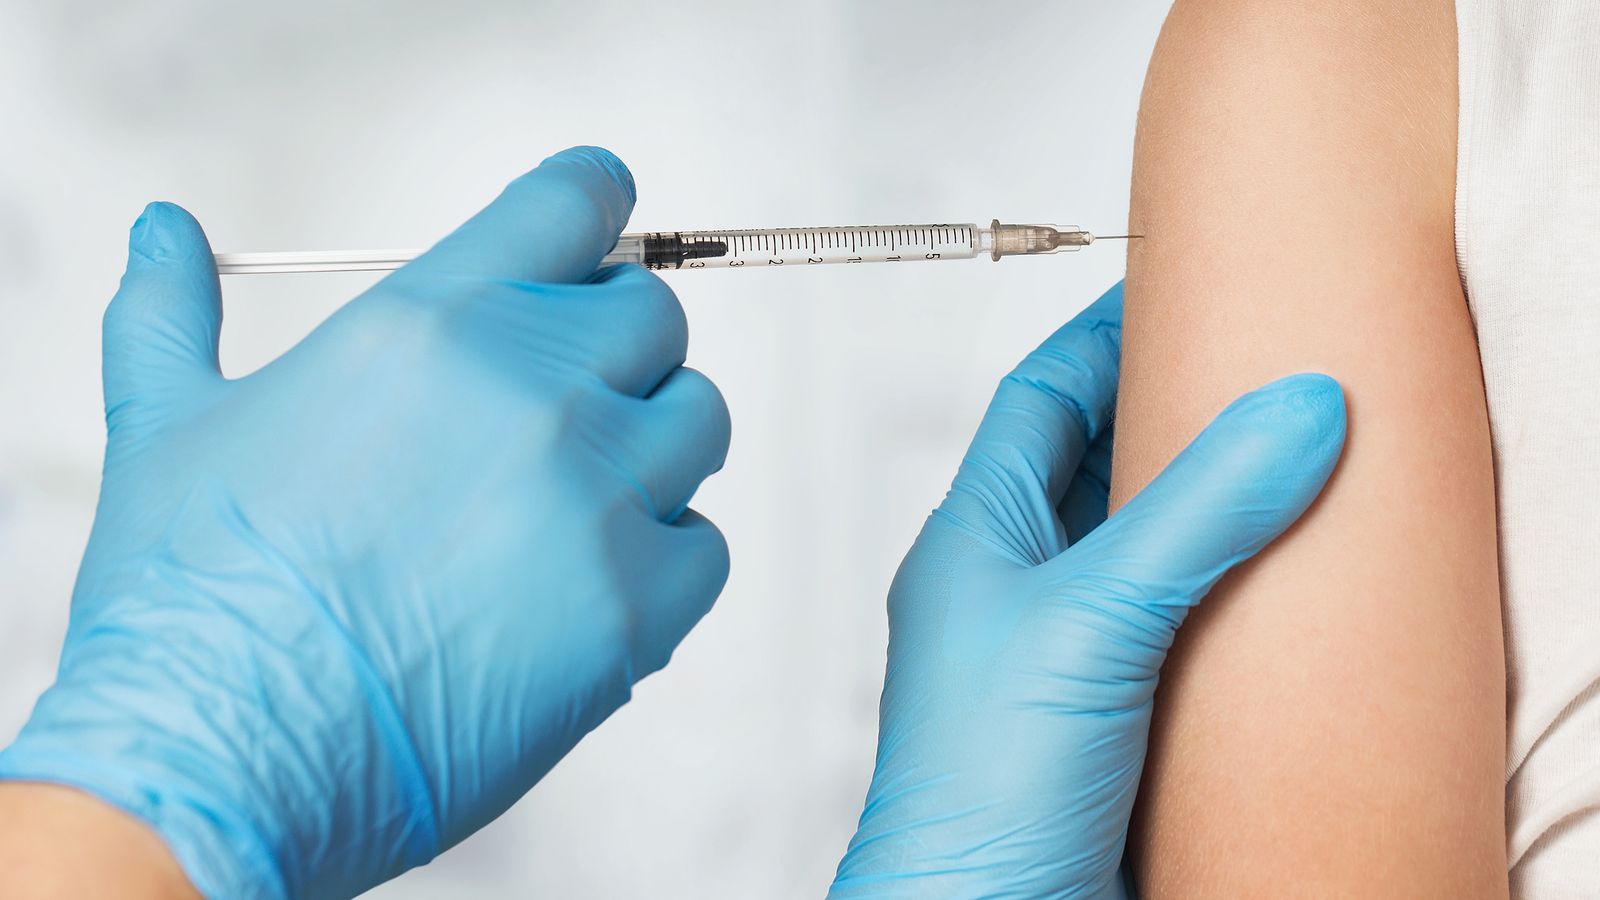 Hpv impfung nebenwirkungen unfruchtbarkeit - Hpv impfung nebenwirkungen